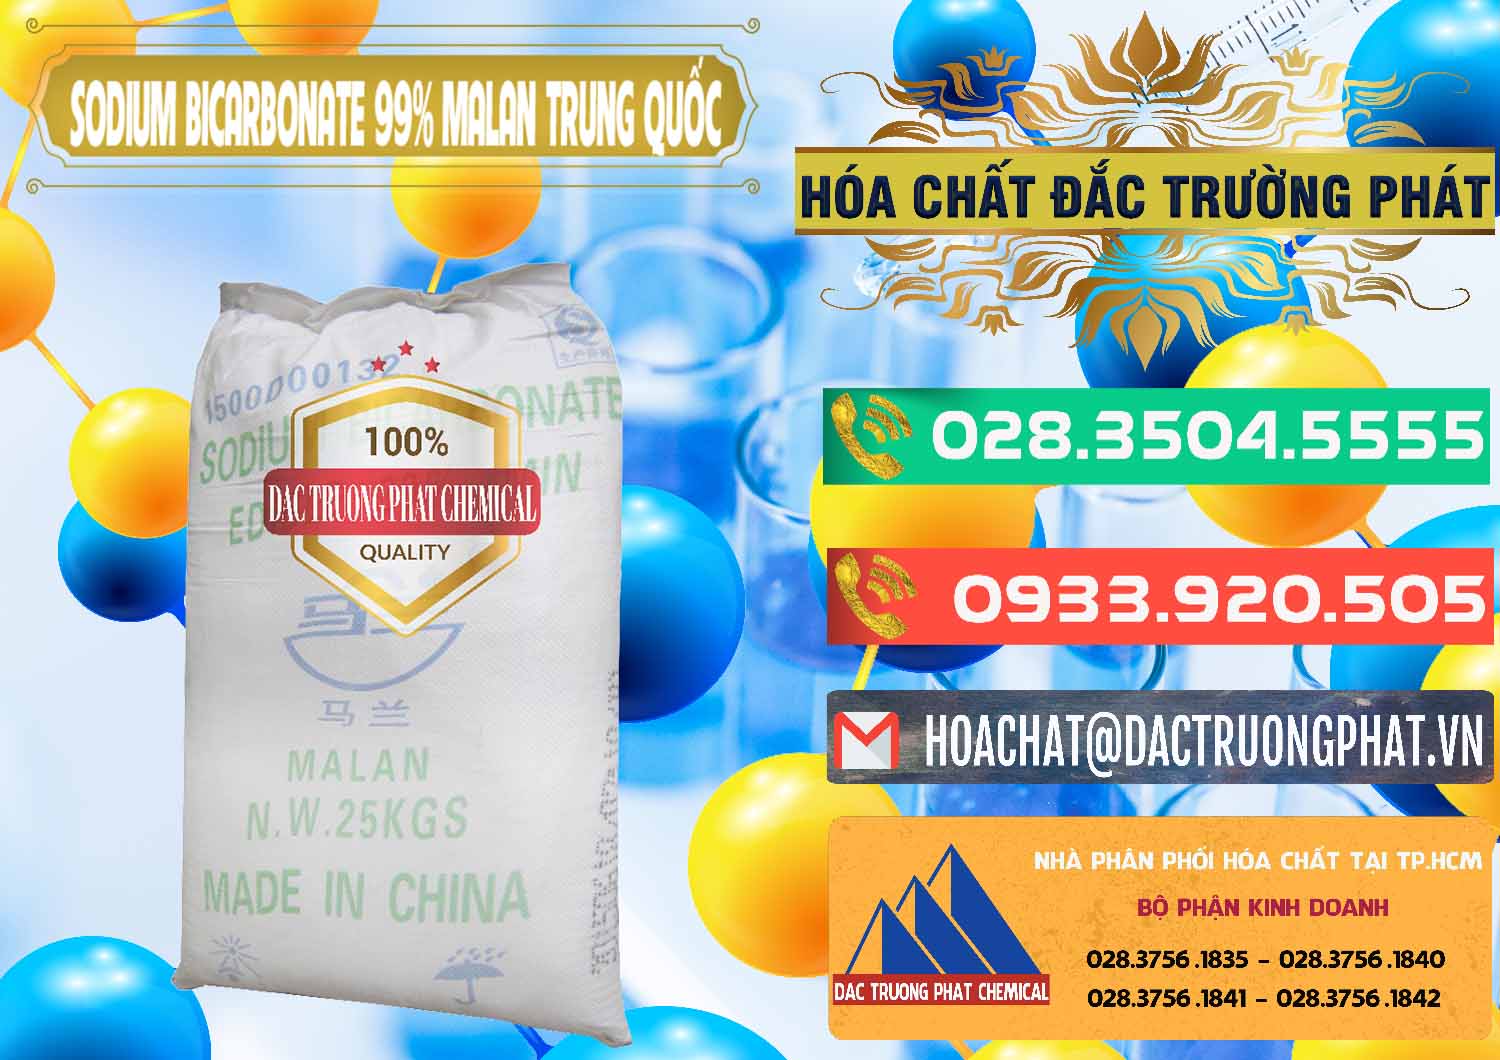 Cty bán & cung cấp Sodium Bicarbonate – Bicar NaHCO3 Malan Trung Quốc China - 0218 - Công ty kinh doanh & cung cấp hóa chất tại TP.HCM - congtyhoachat.com.vn